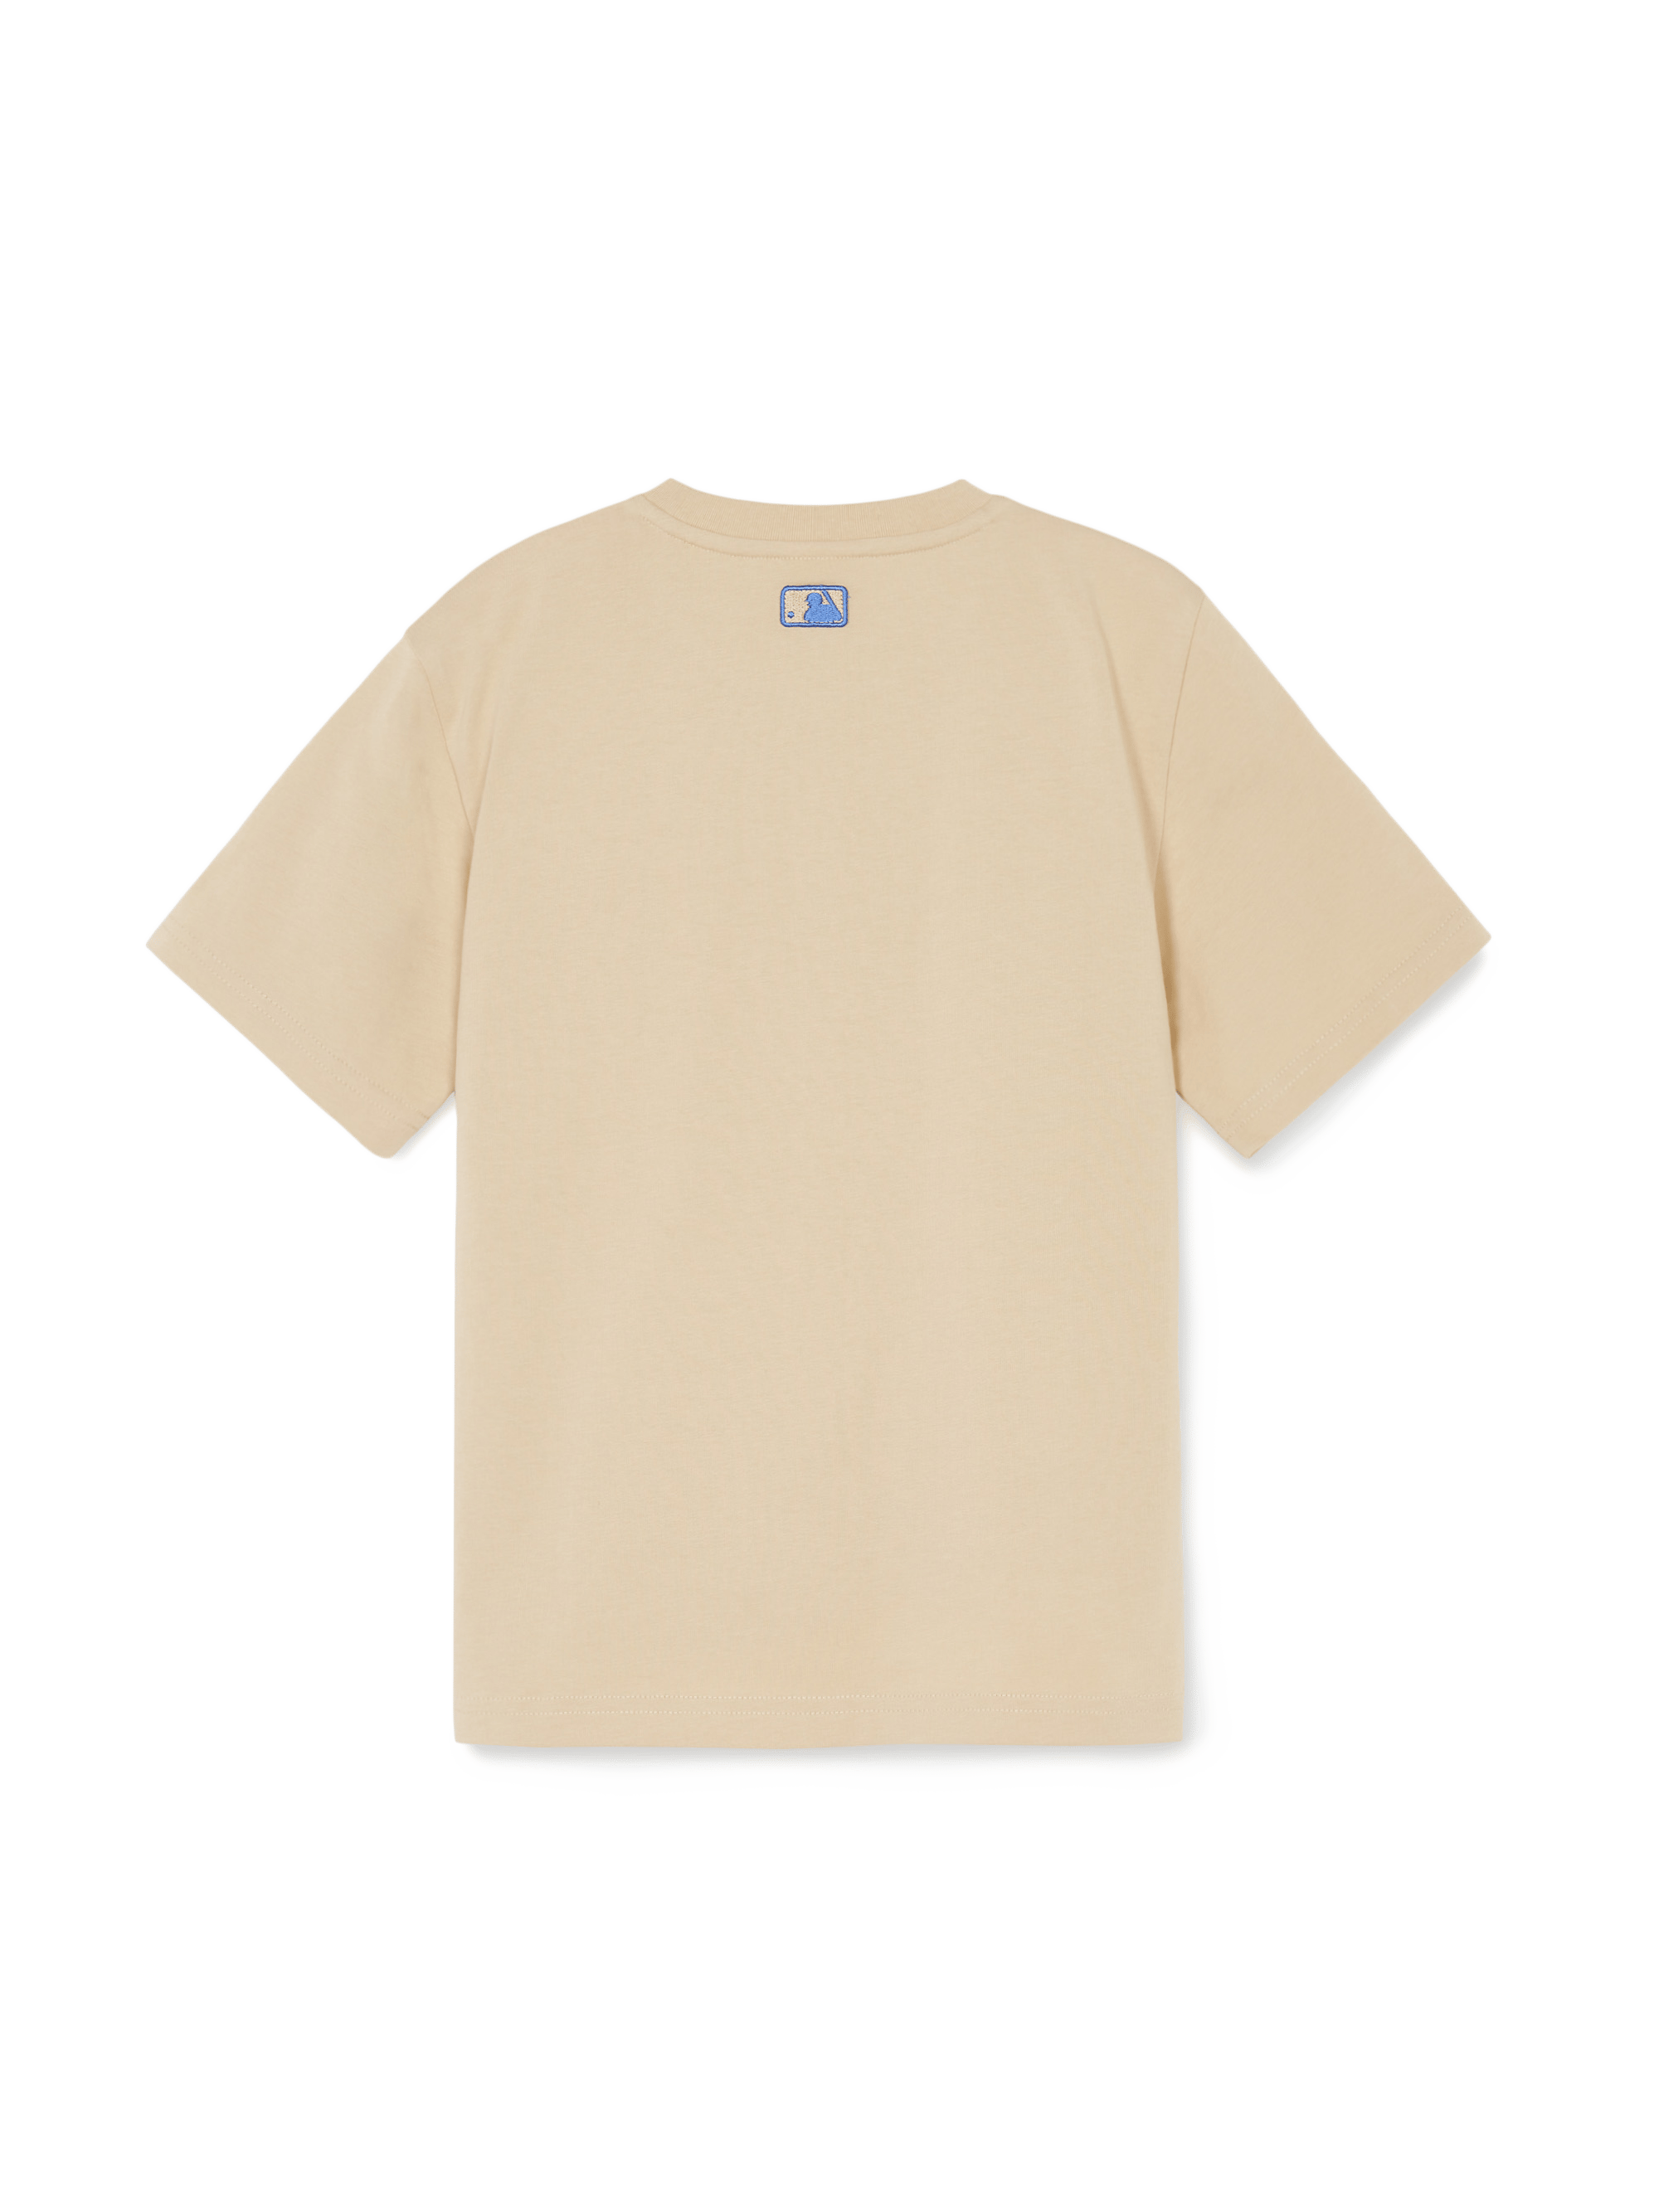 메가베어 그래픽 반팔 티셔츠 클리블랜드 가디언스